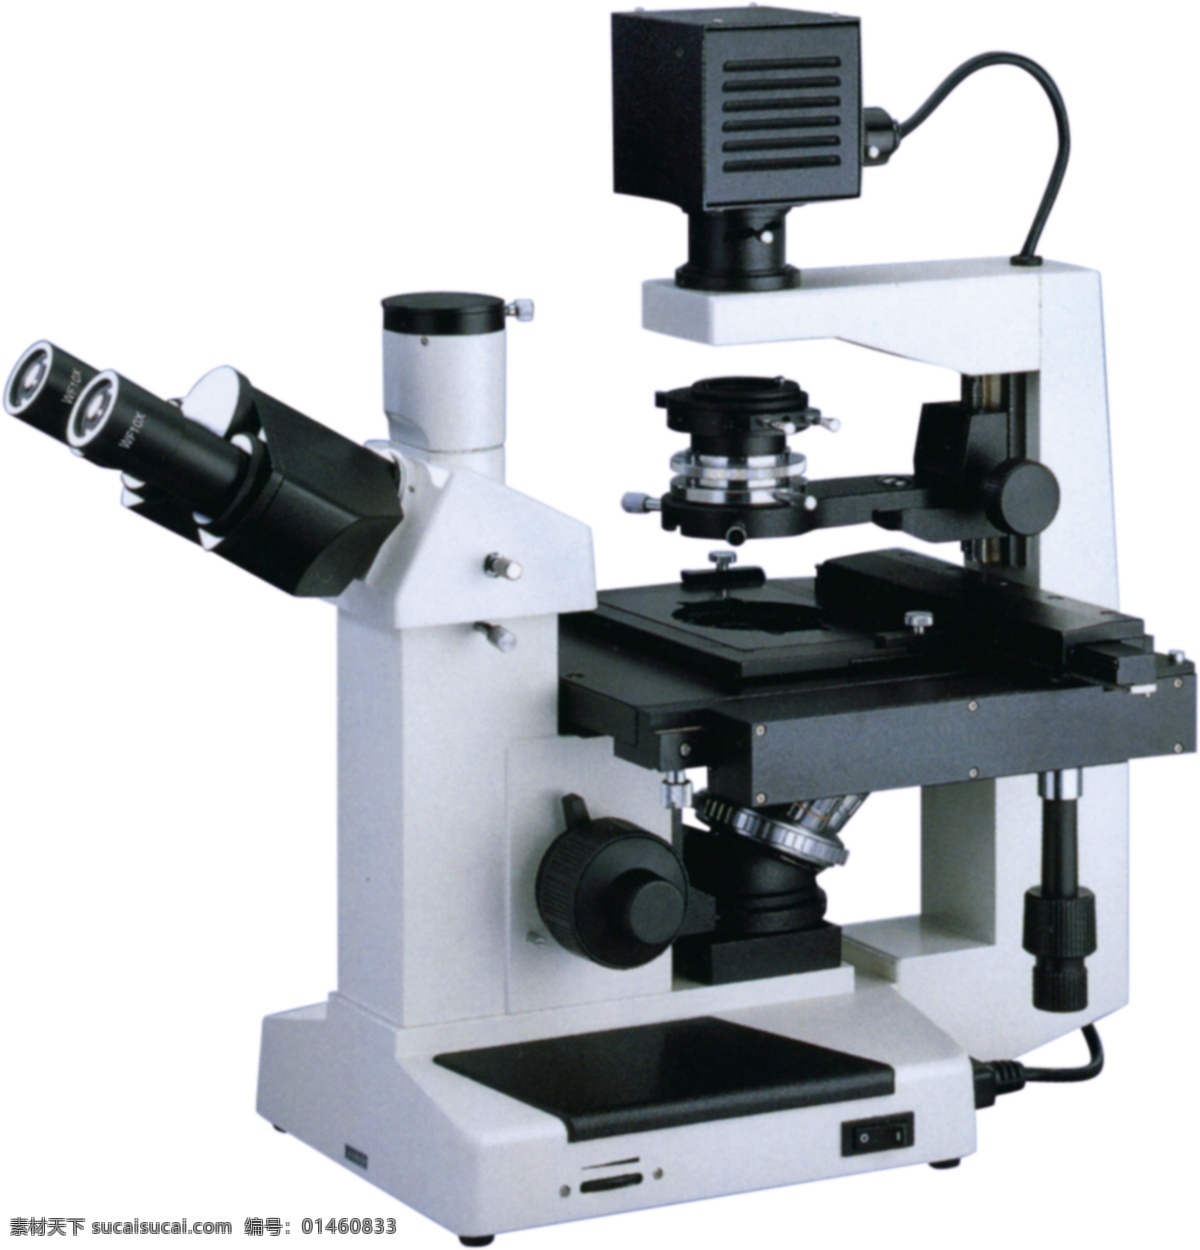 显微镜图片 显微镜 电子显微镜 电子放大镜 台式 自然风景 旅游摄影 高清 图层 科学研究 现代科技